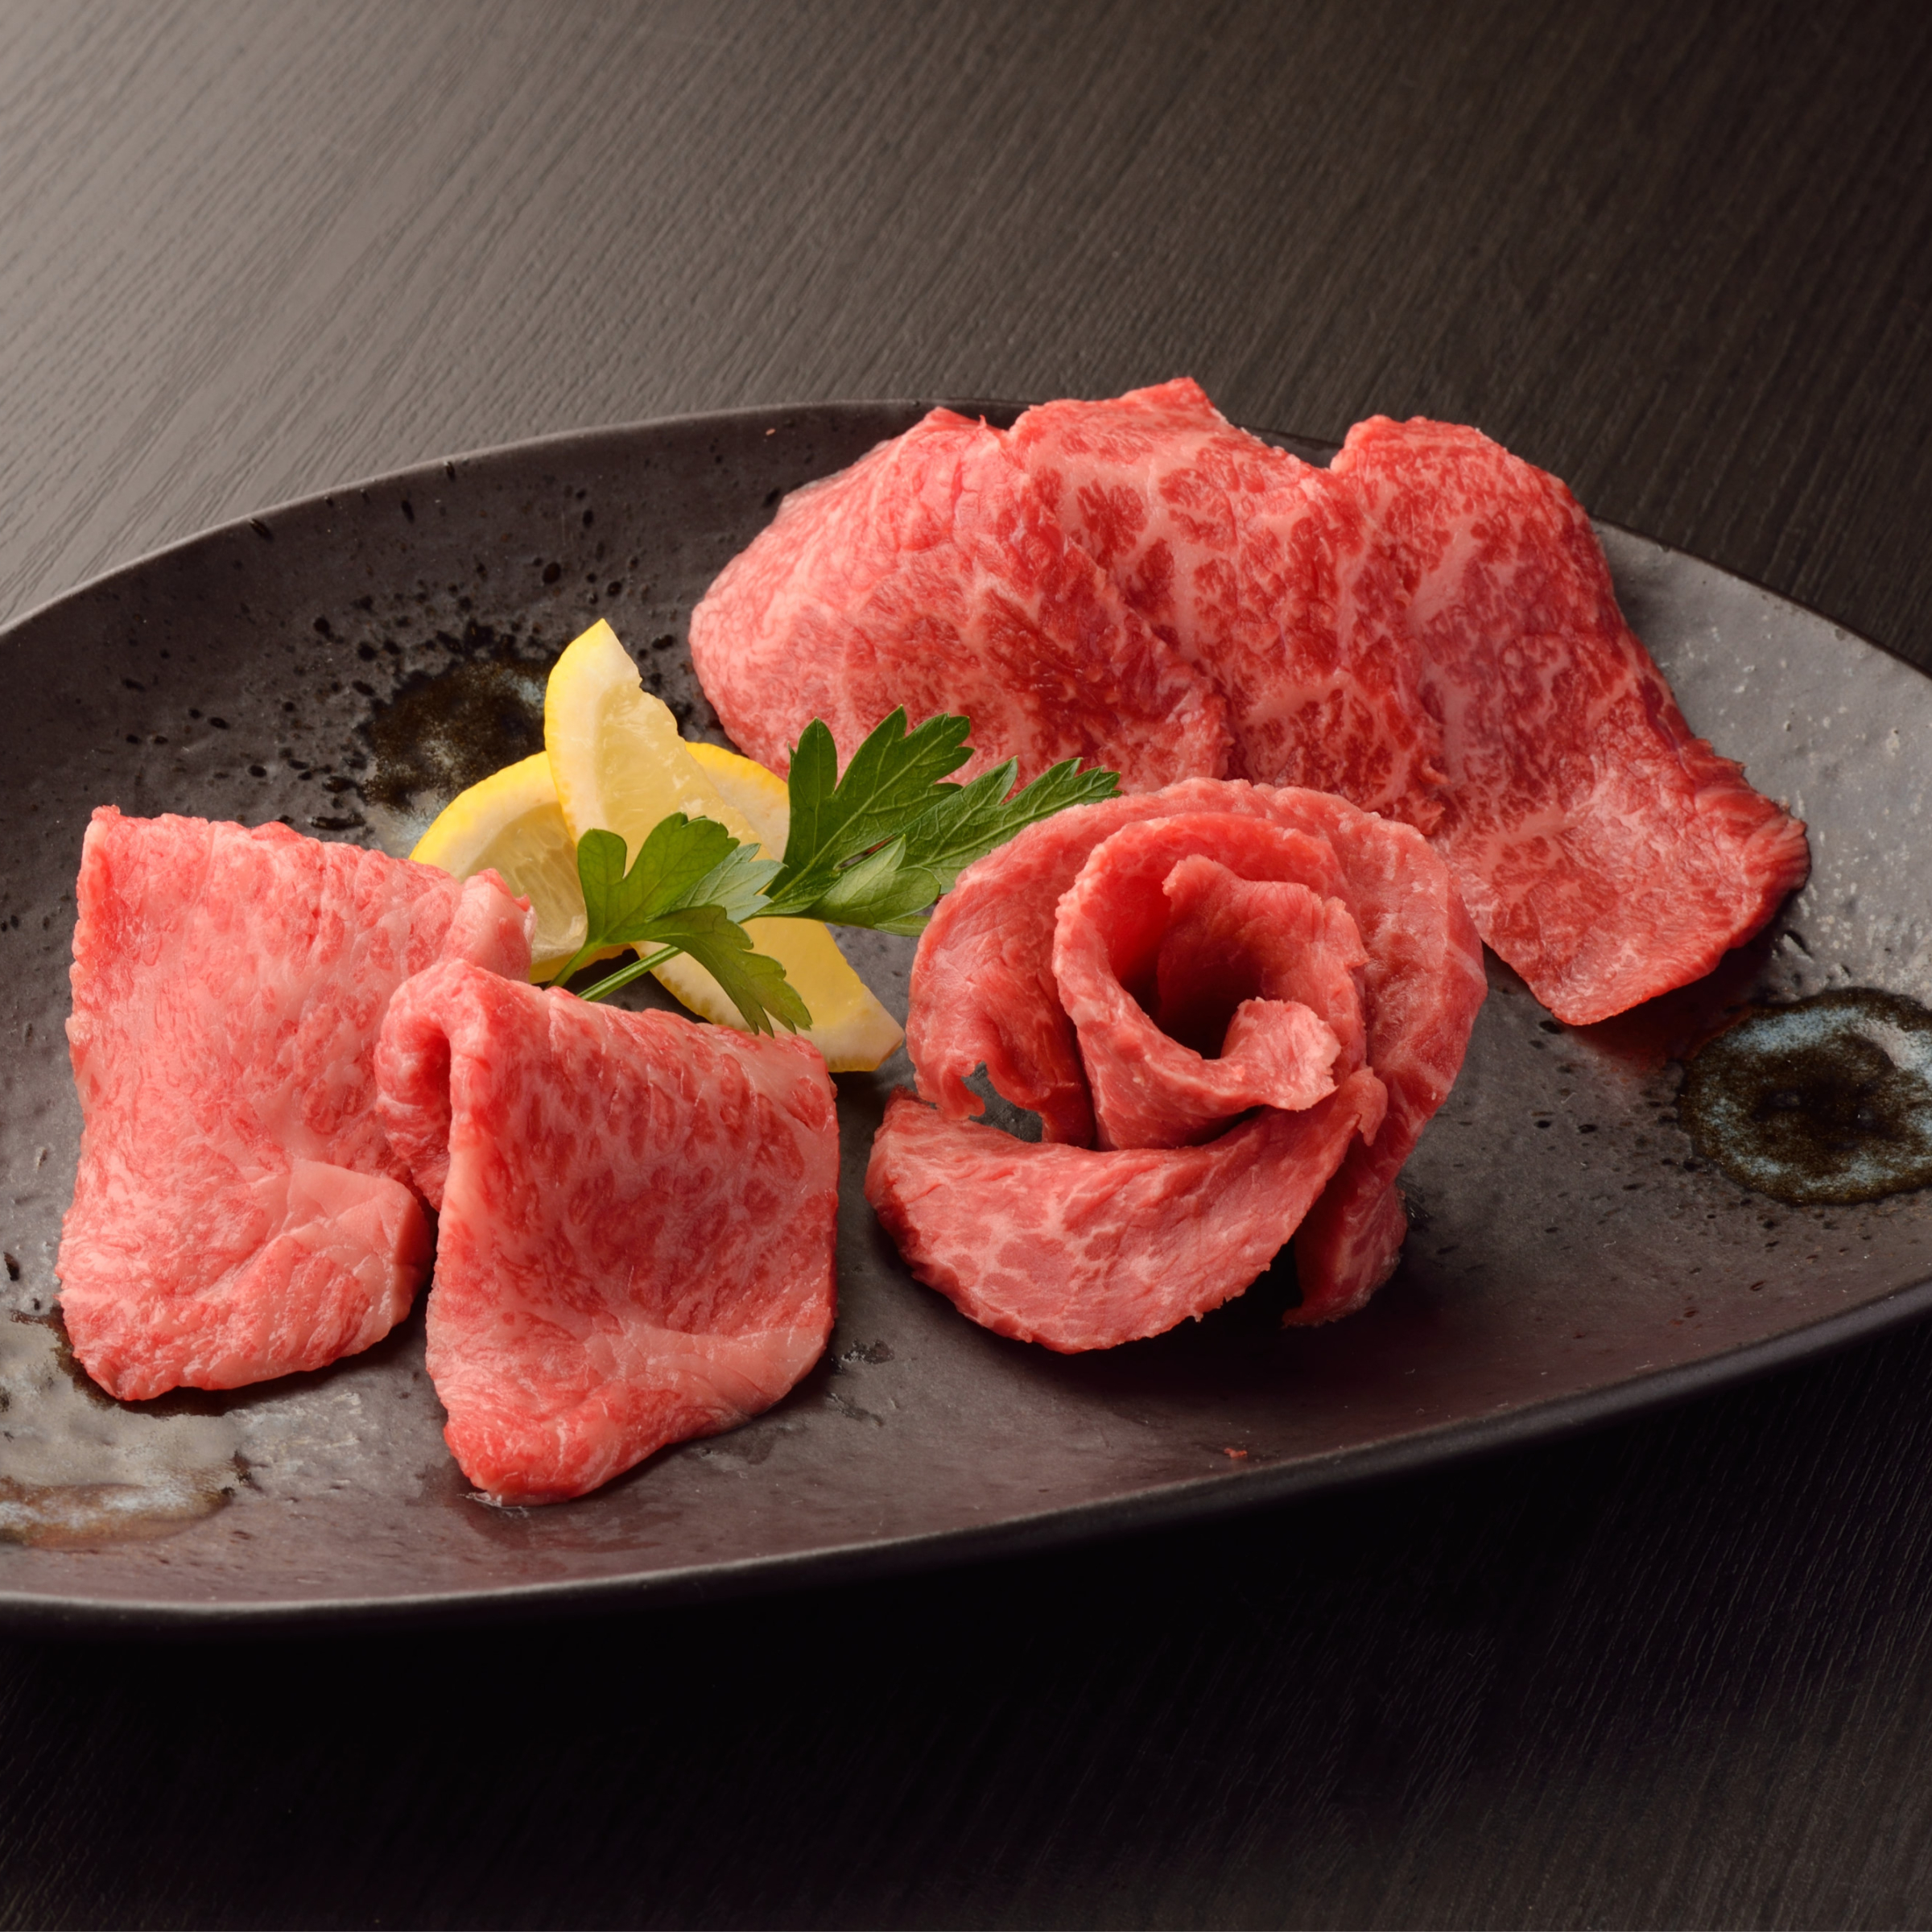 米沢牛の赤身肉は食べやすくさっぱりとした脂で少し甘い。是非お確かめください。焼肉用画像